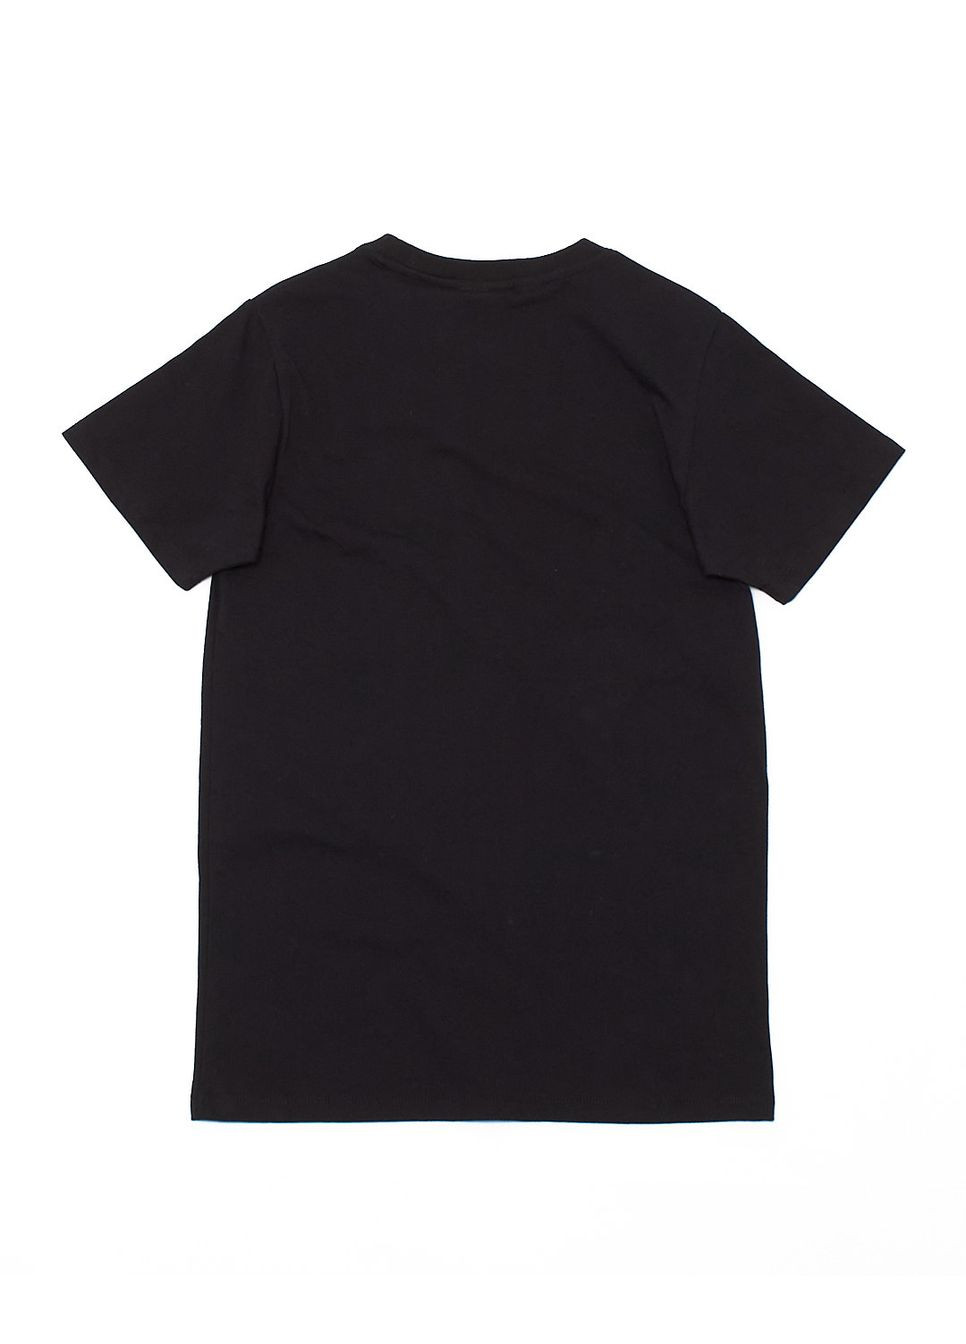 Черная футболка,черный с принтом, Wesc